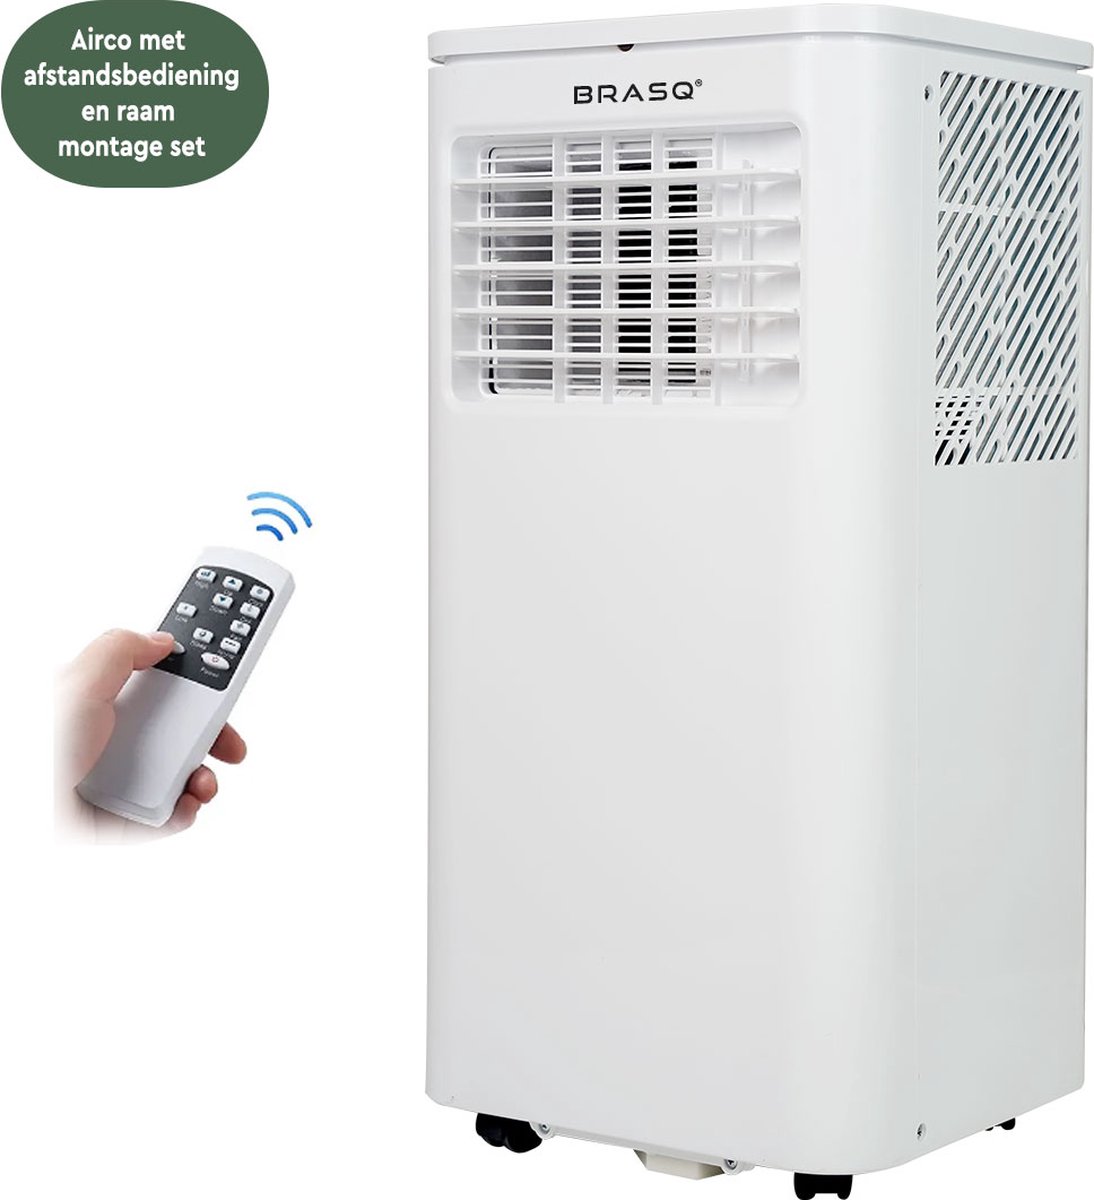 BRASQ Mobiele airconditioning met afstandsbediening MAC9000 - luchtvochtreiniger - tot 16m2 - 9000 BTU - Wit